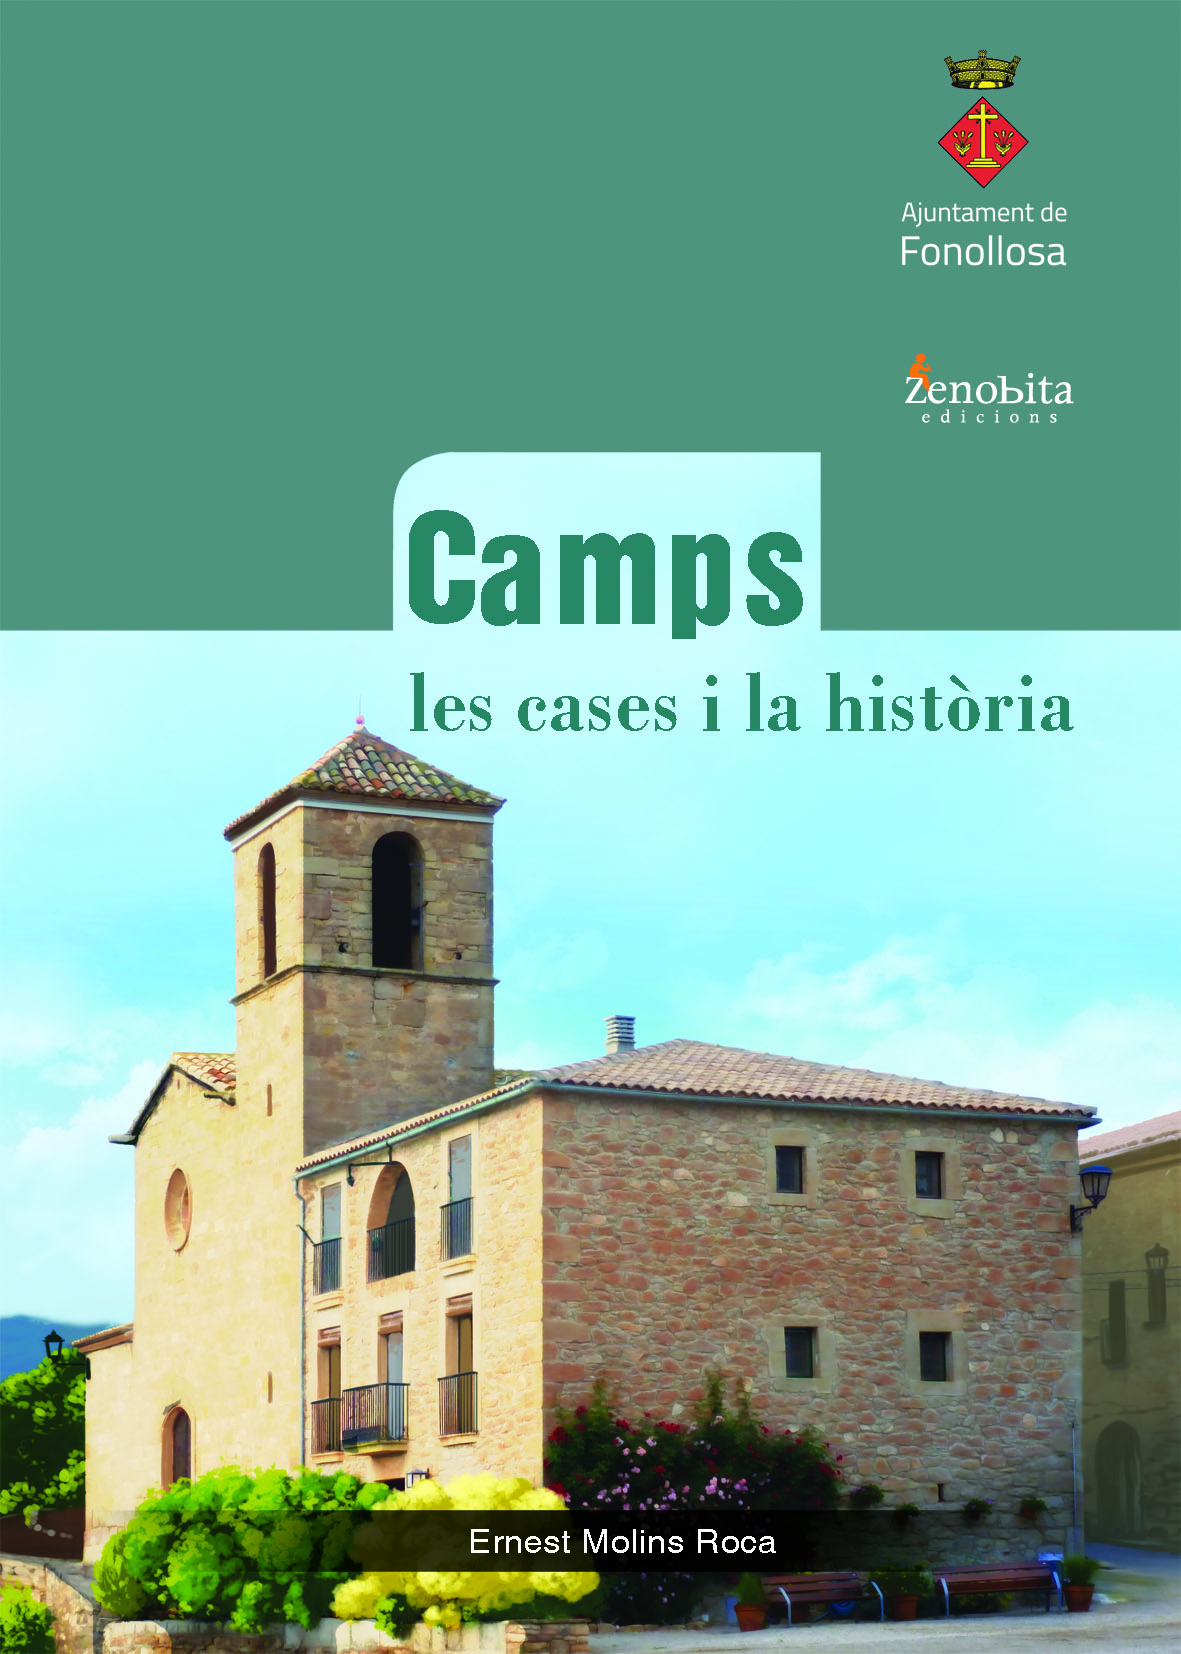 Presentació de “Camps, les cases i la història”